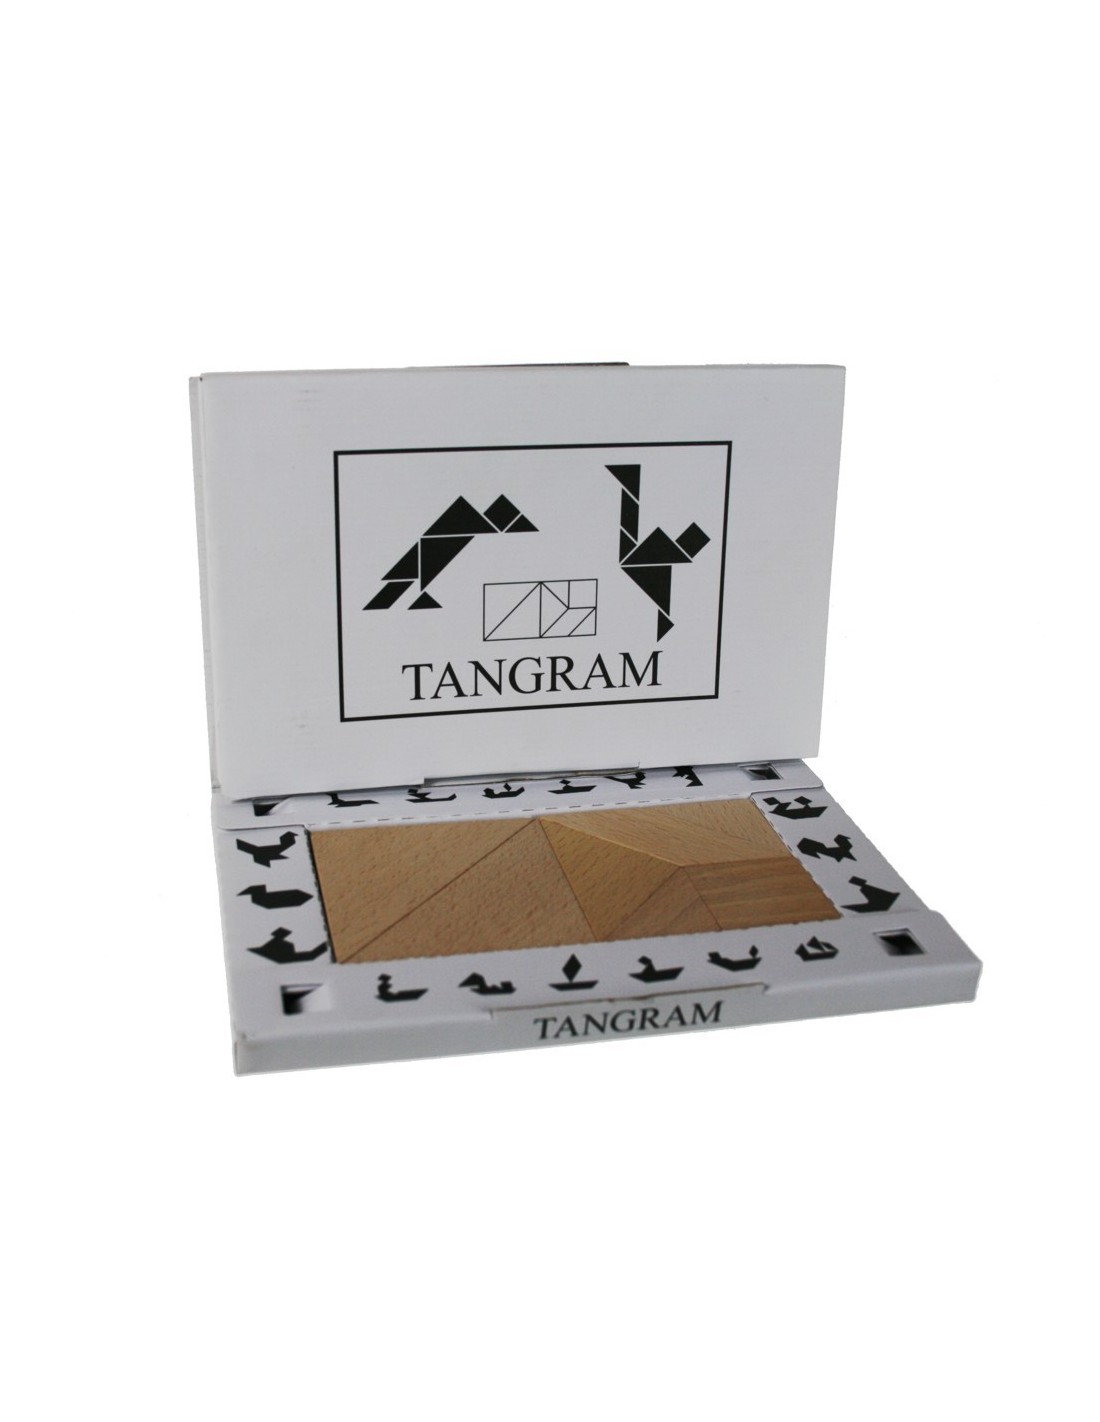 Juego puzzle Tangram de Madera en estuche juego de razonamiento geométrico tangram juego clásico. 